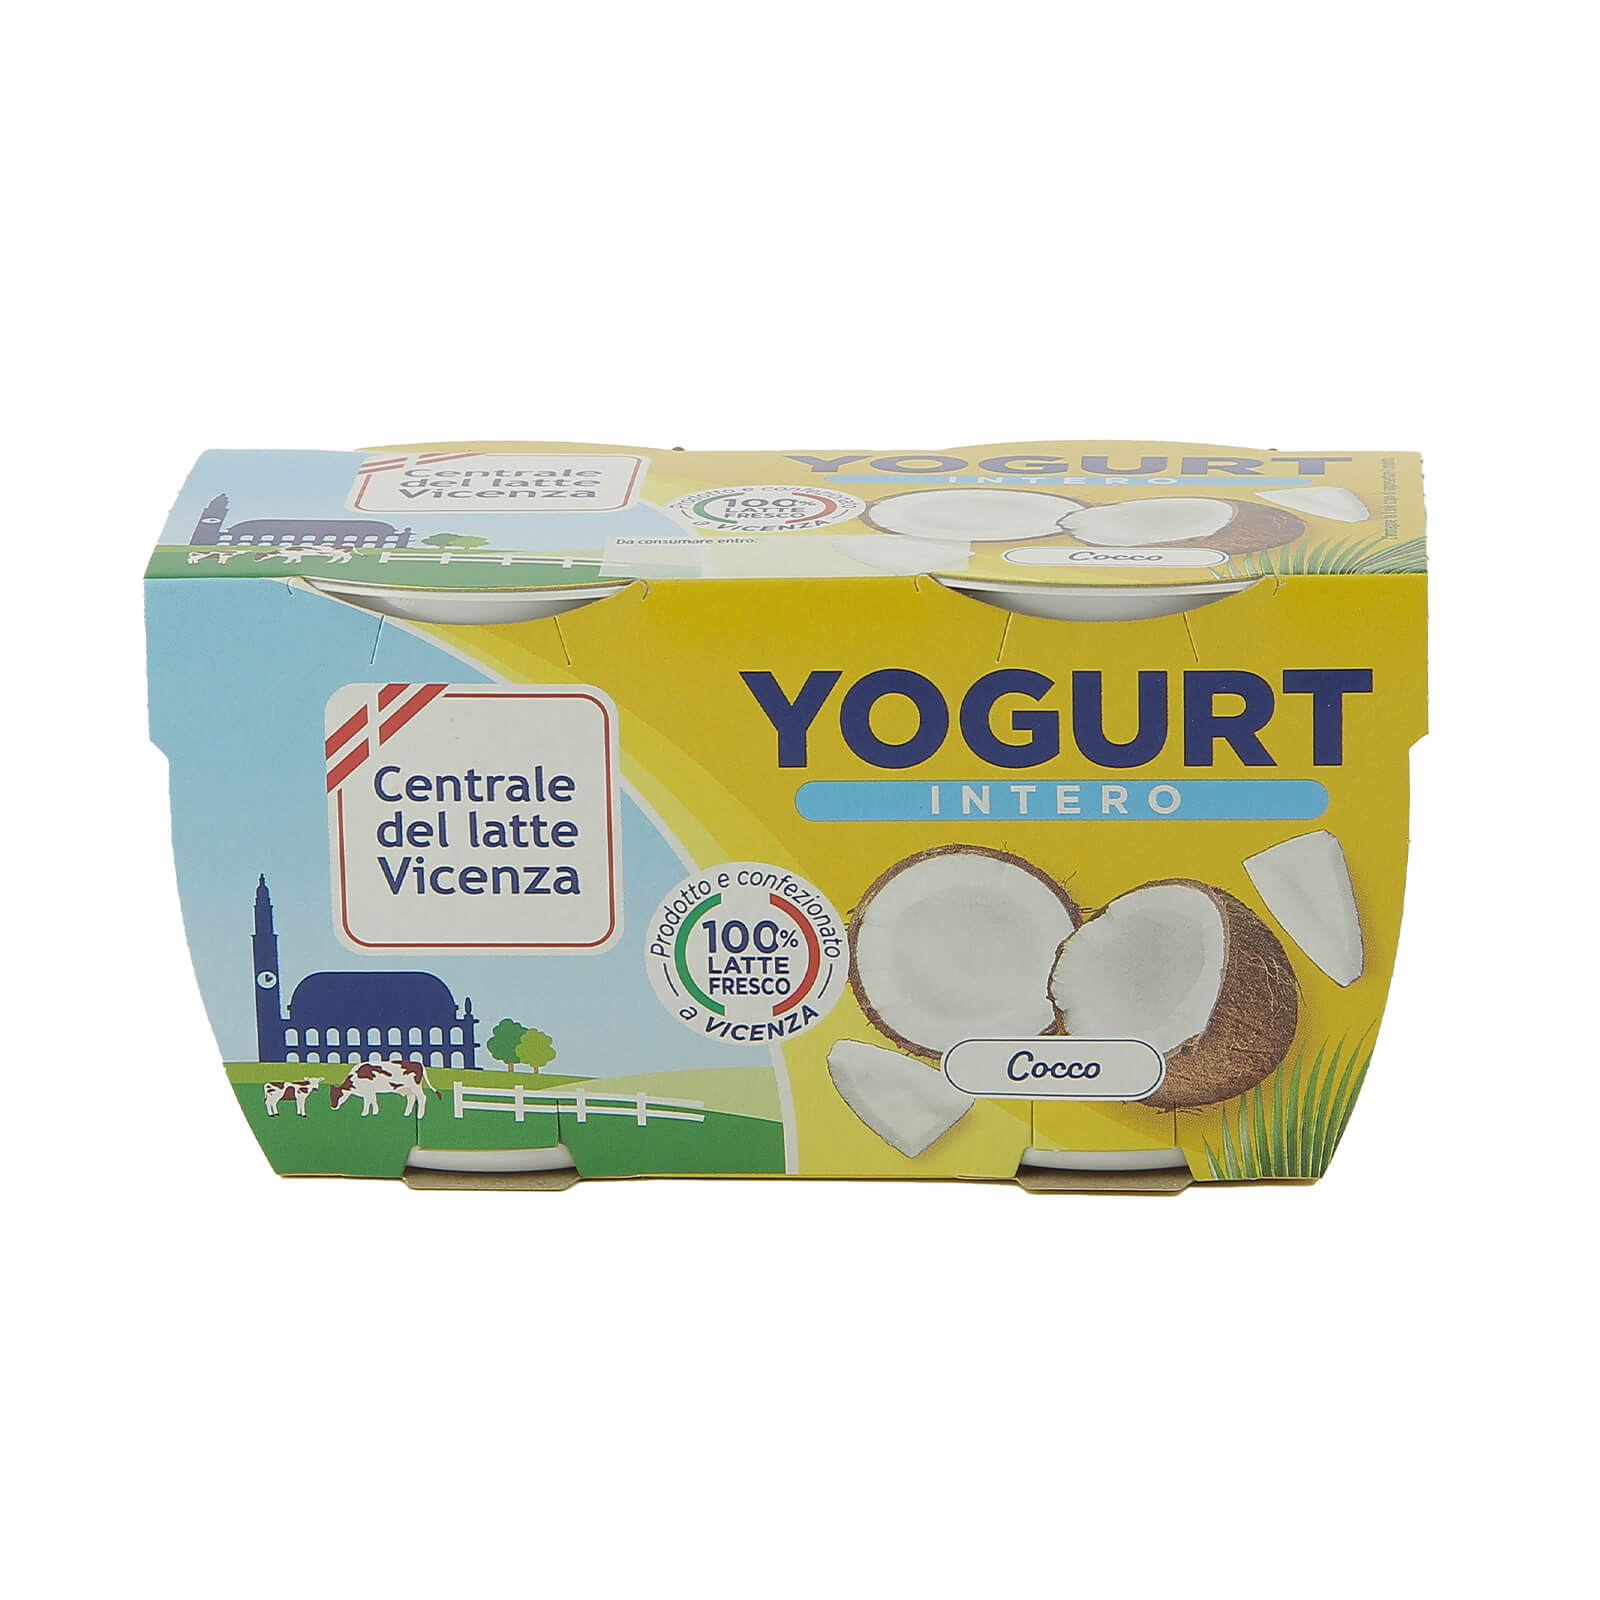 Yogurt Intero Vicenza - Cocco - Centrale del Latte di Vicenza